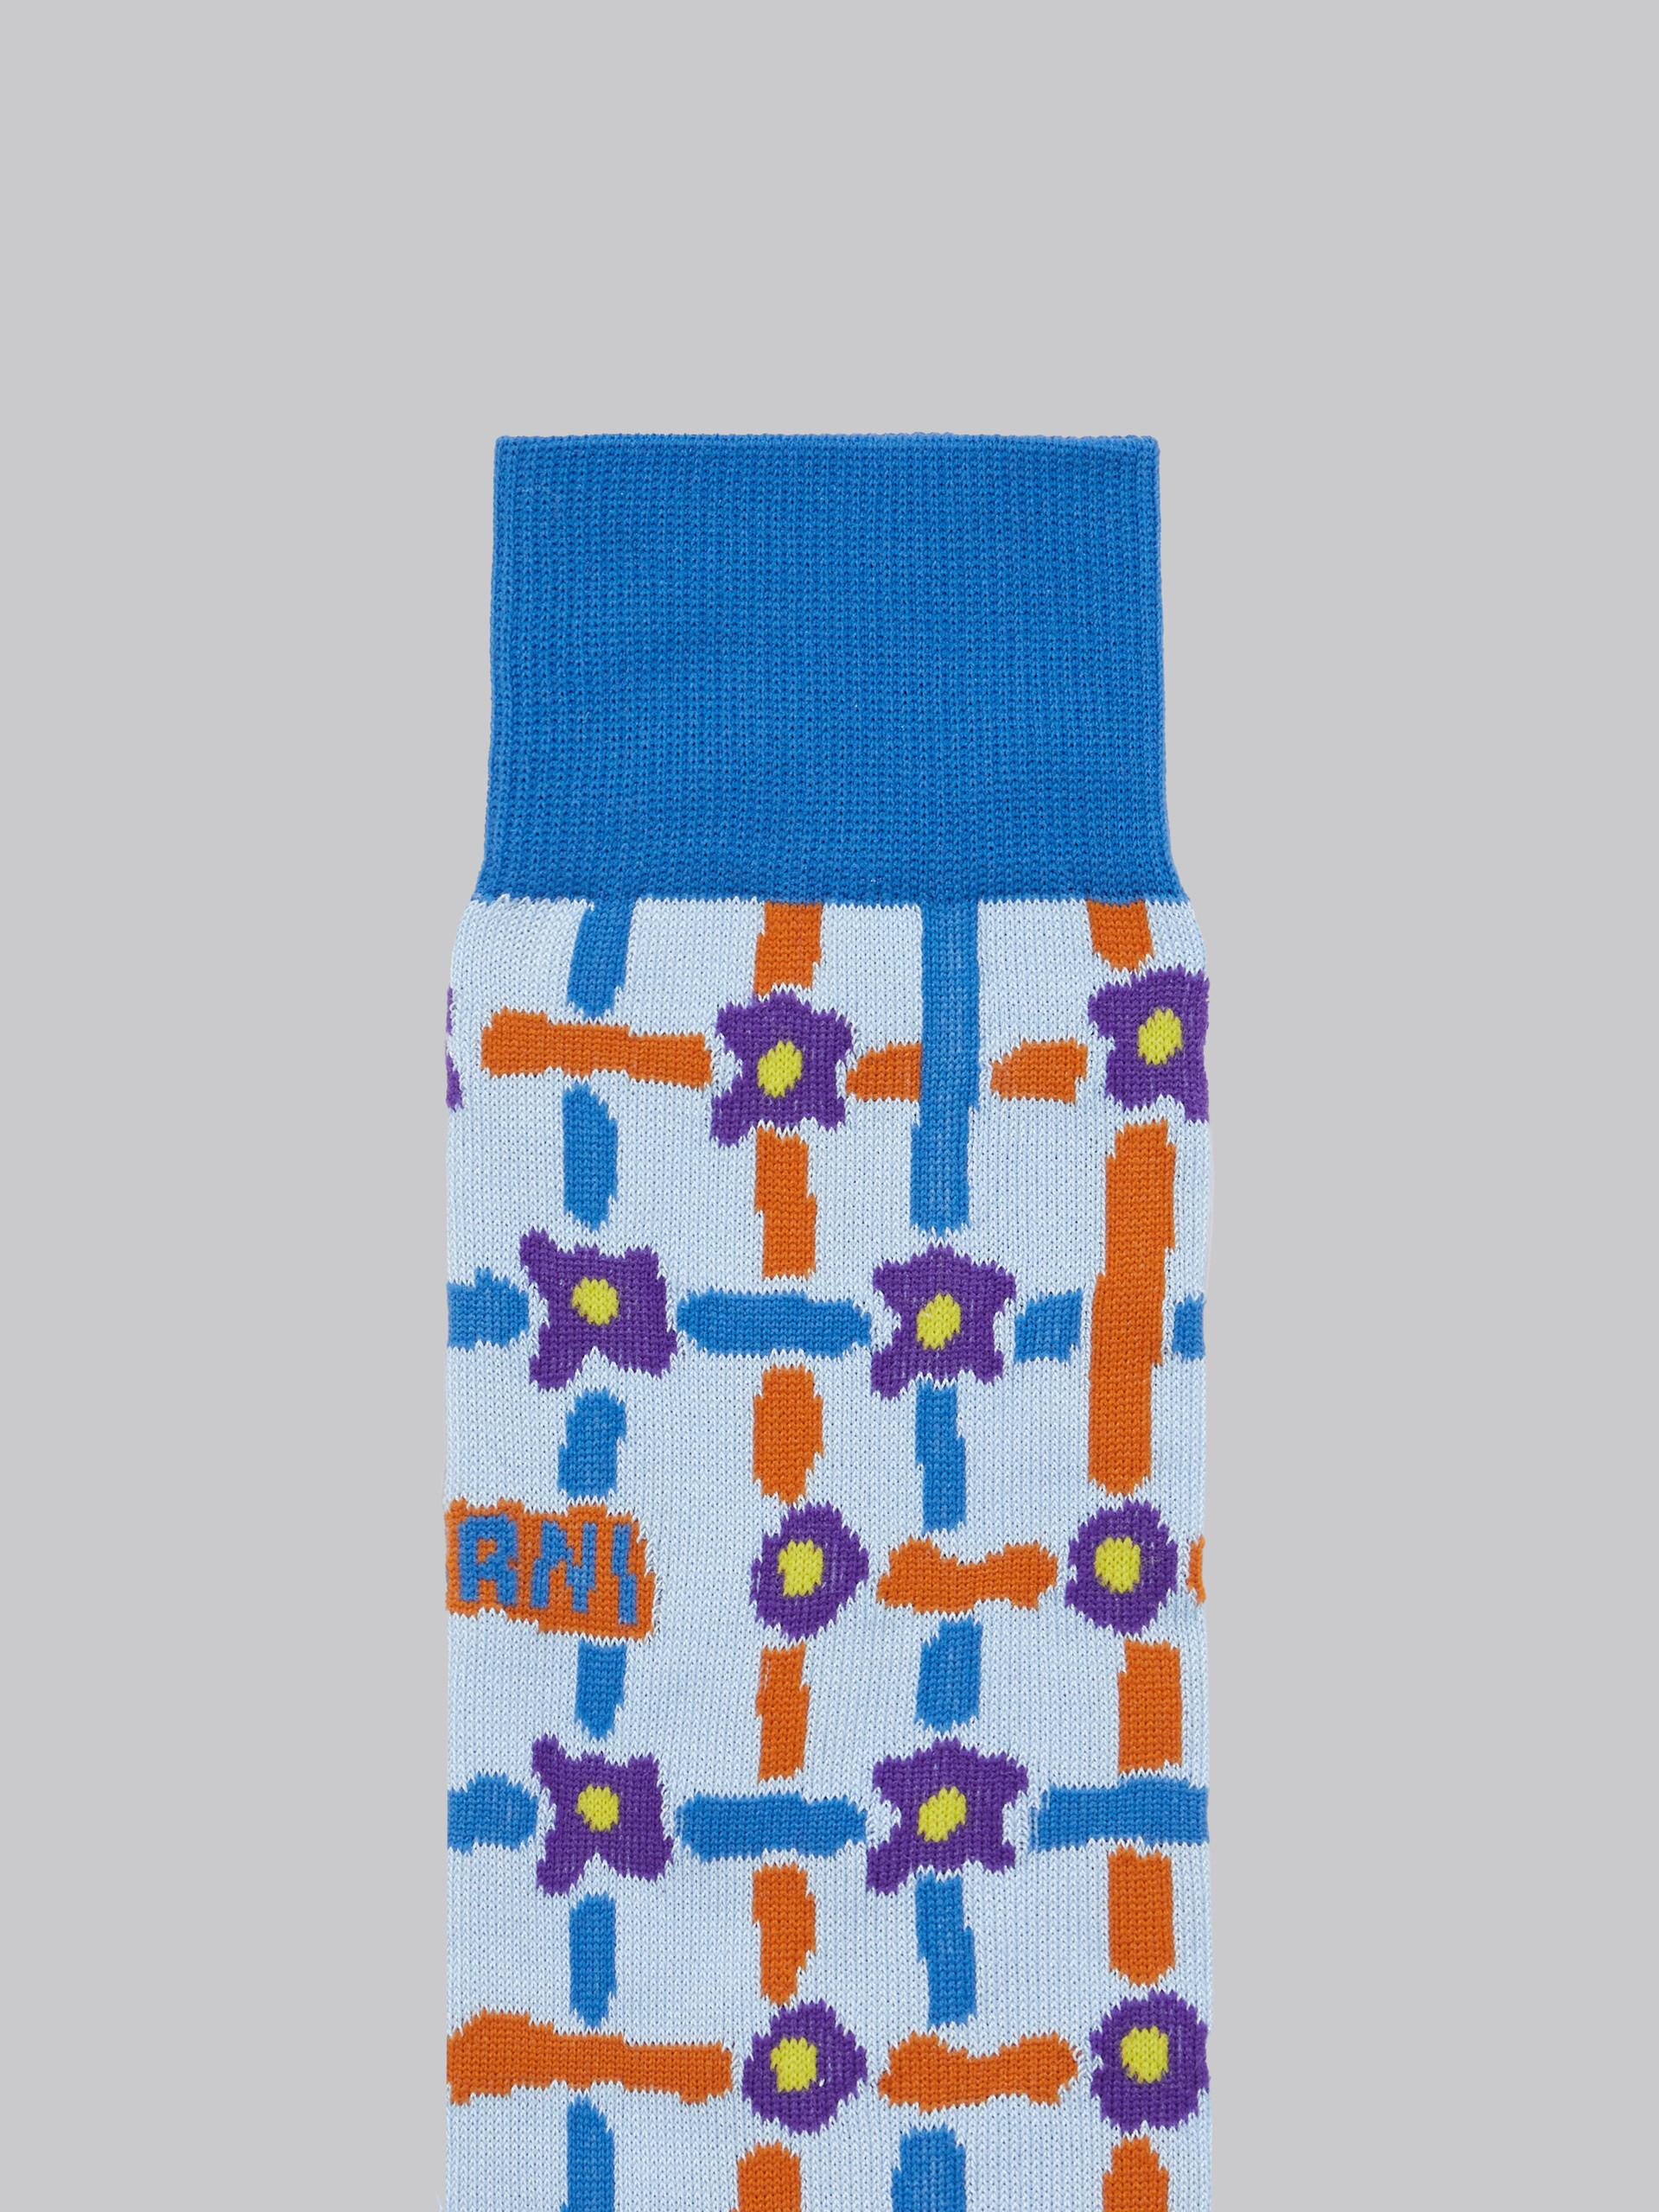 Calzini in cotone azzurro con motivo Saraband - Calze - Image 3